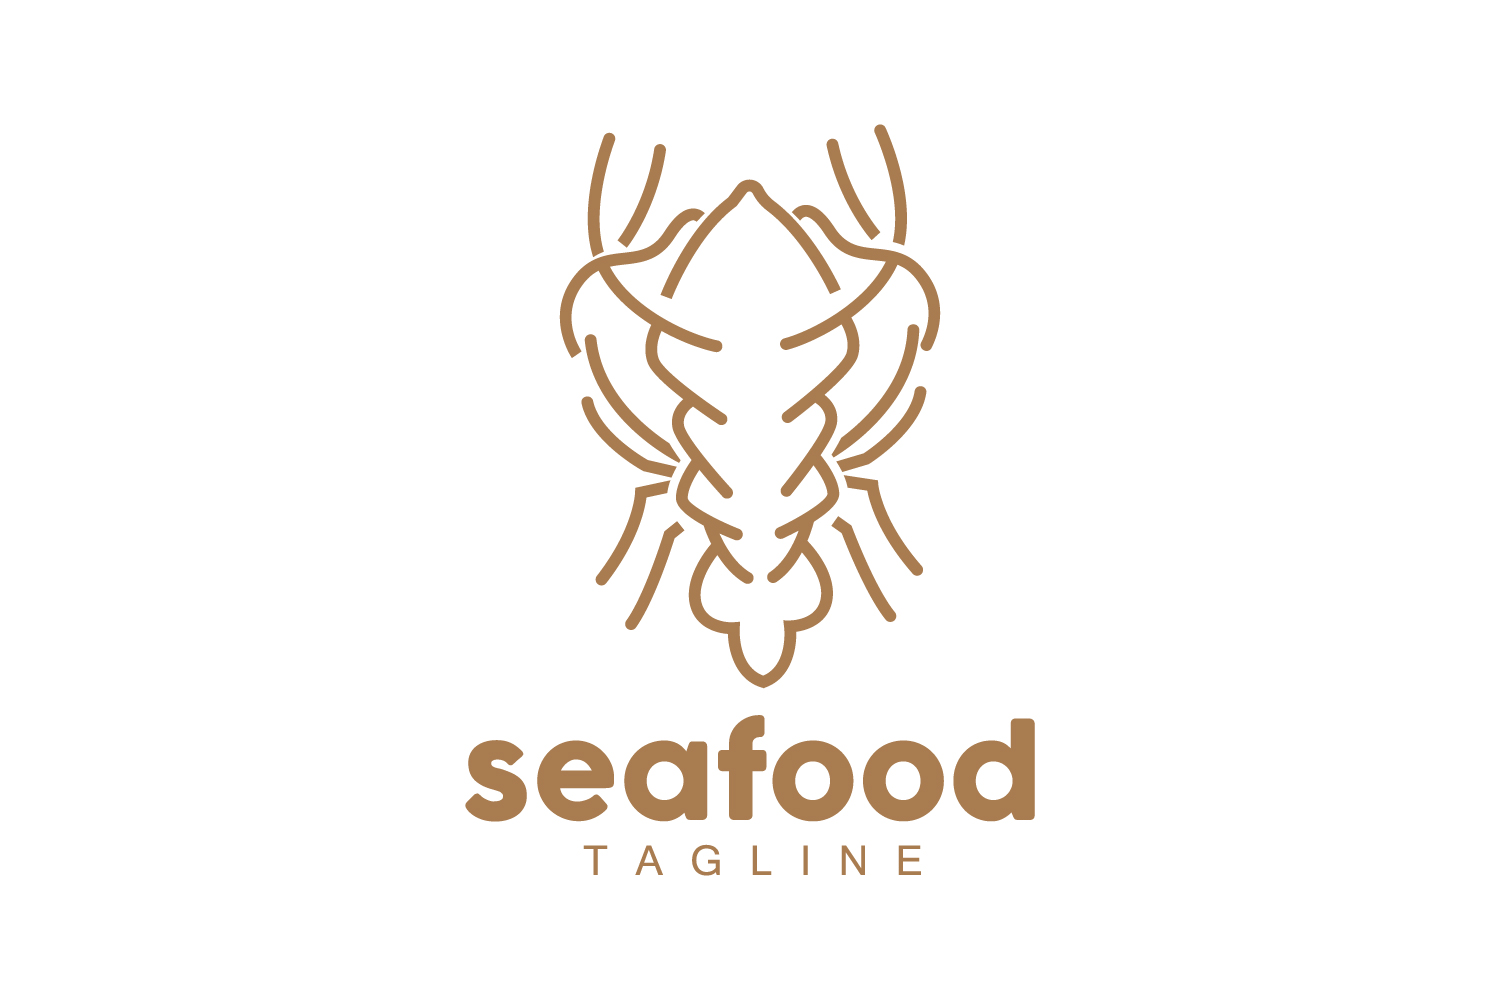 Sea animal lobster logo design vector V3